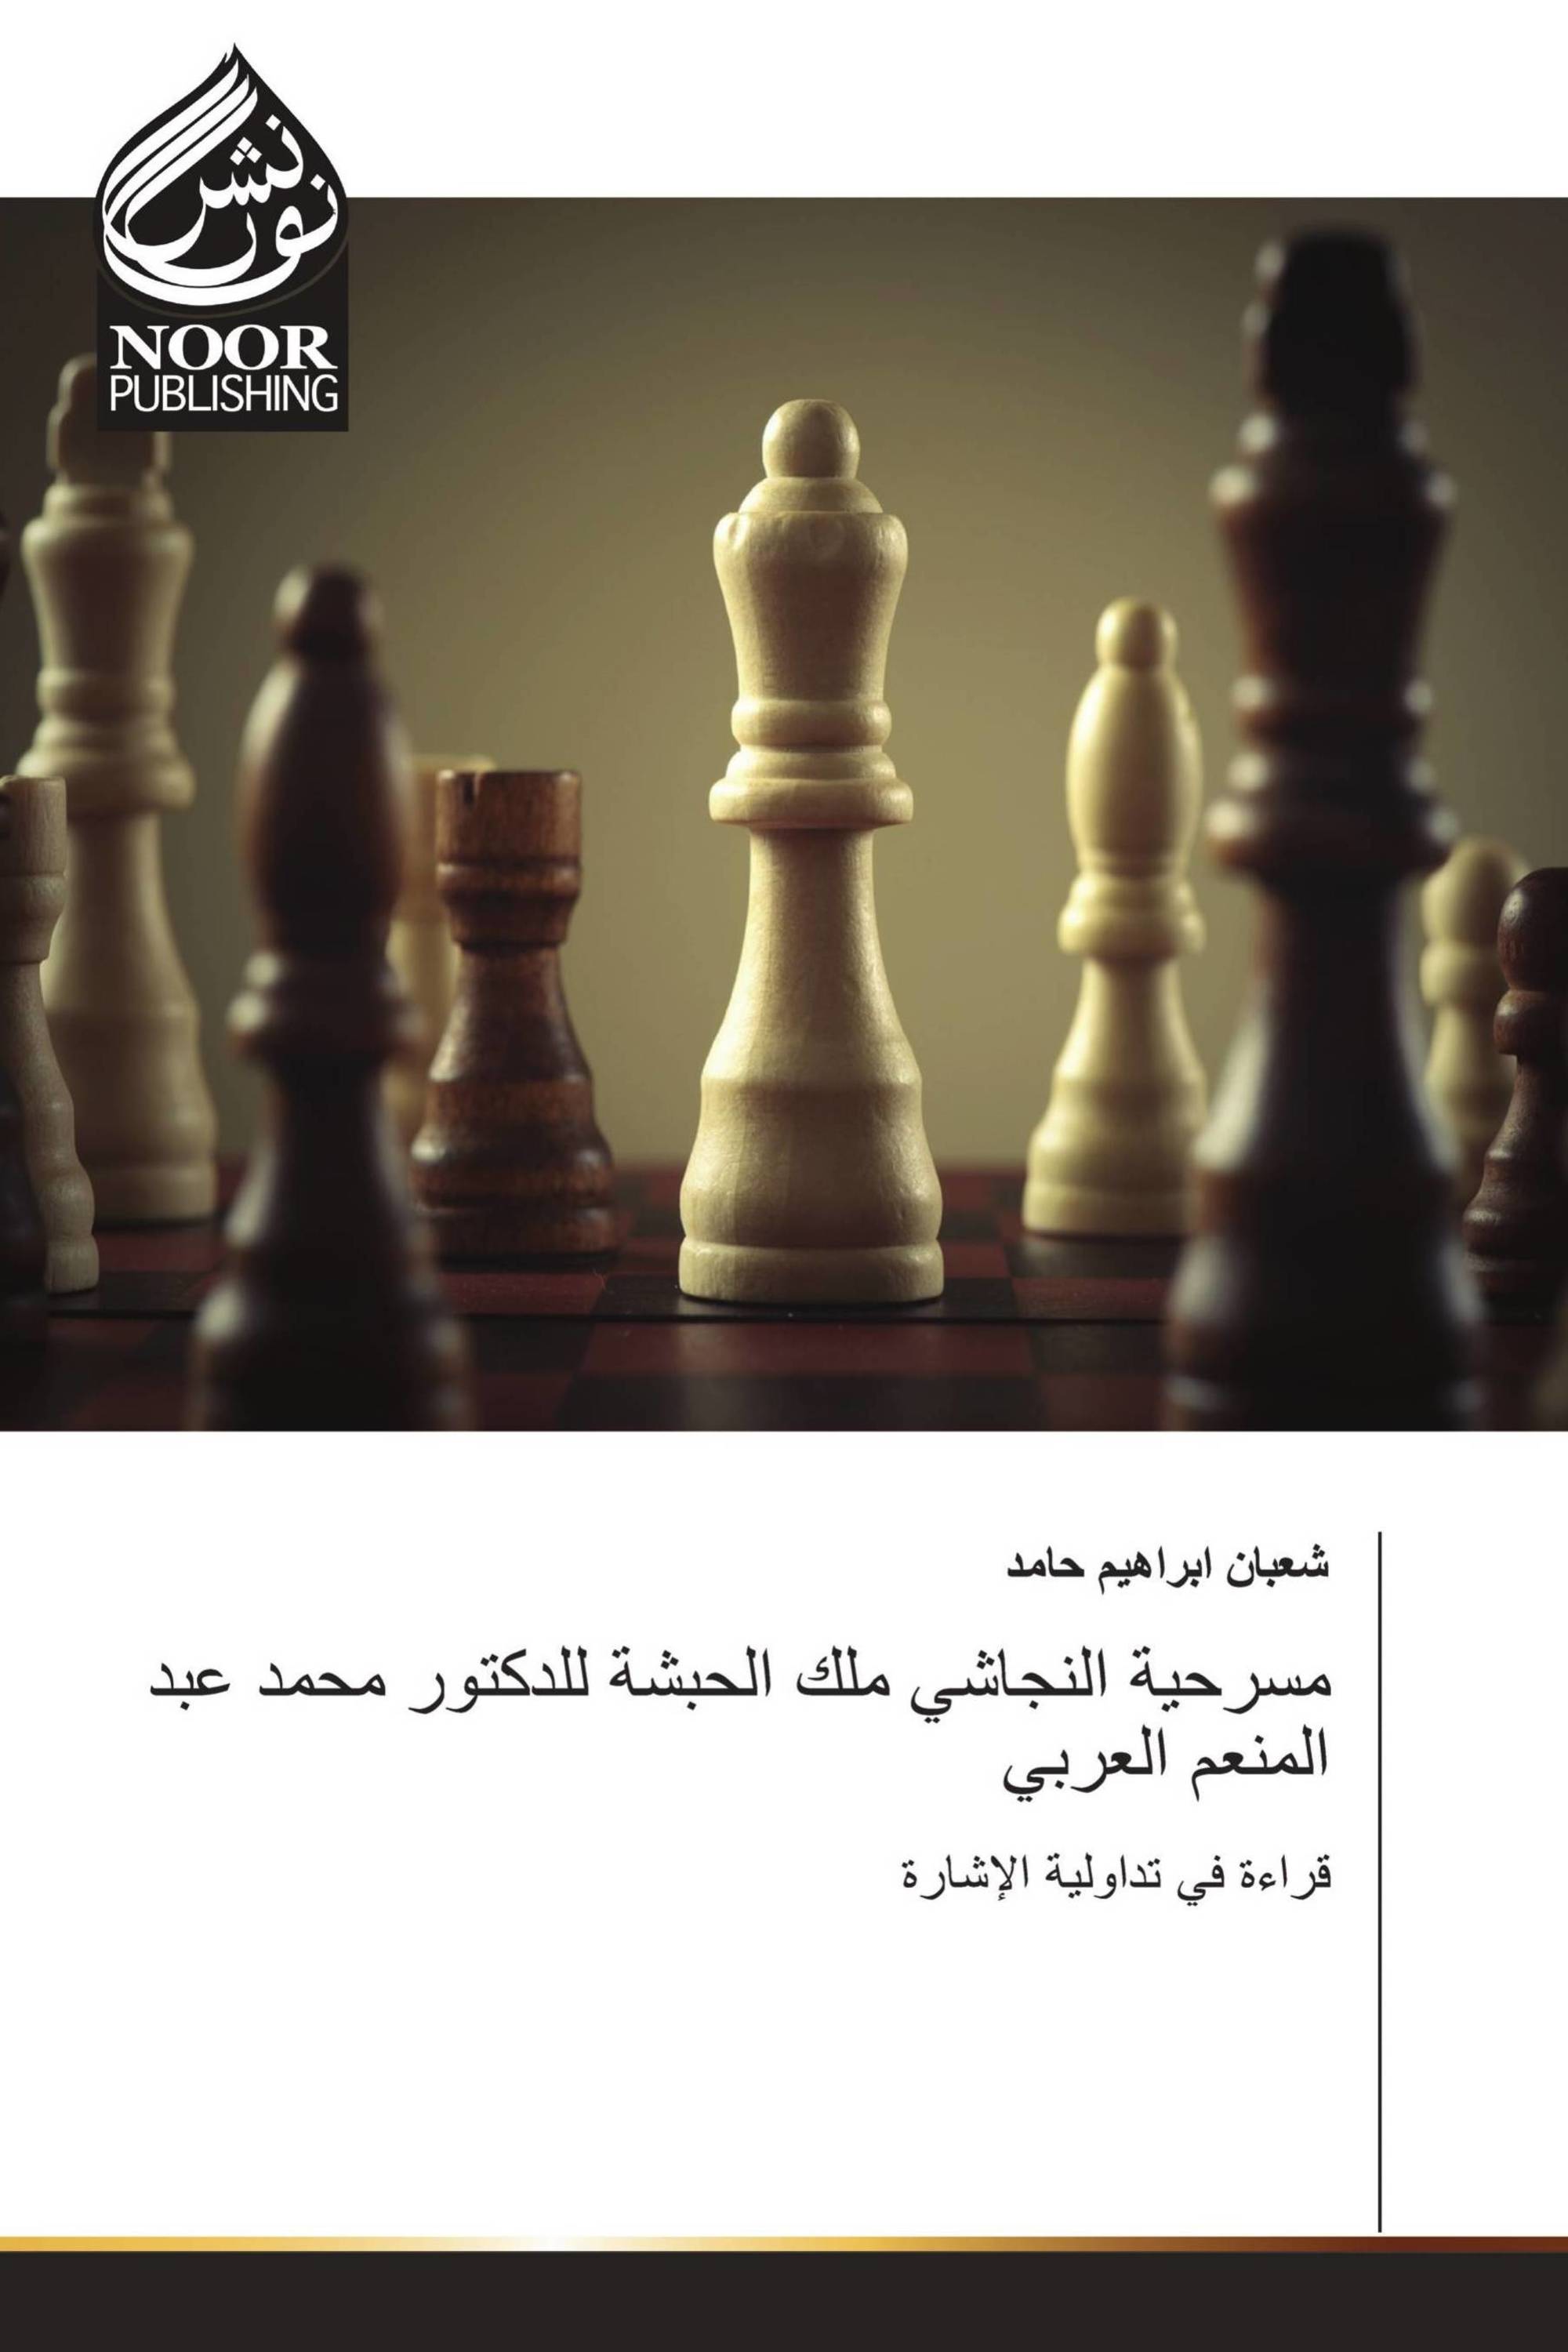 مسرحية النجاشي ملك الحبشة للدكتور محمد عبد المنعم العربي